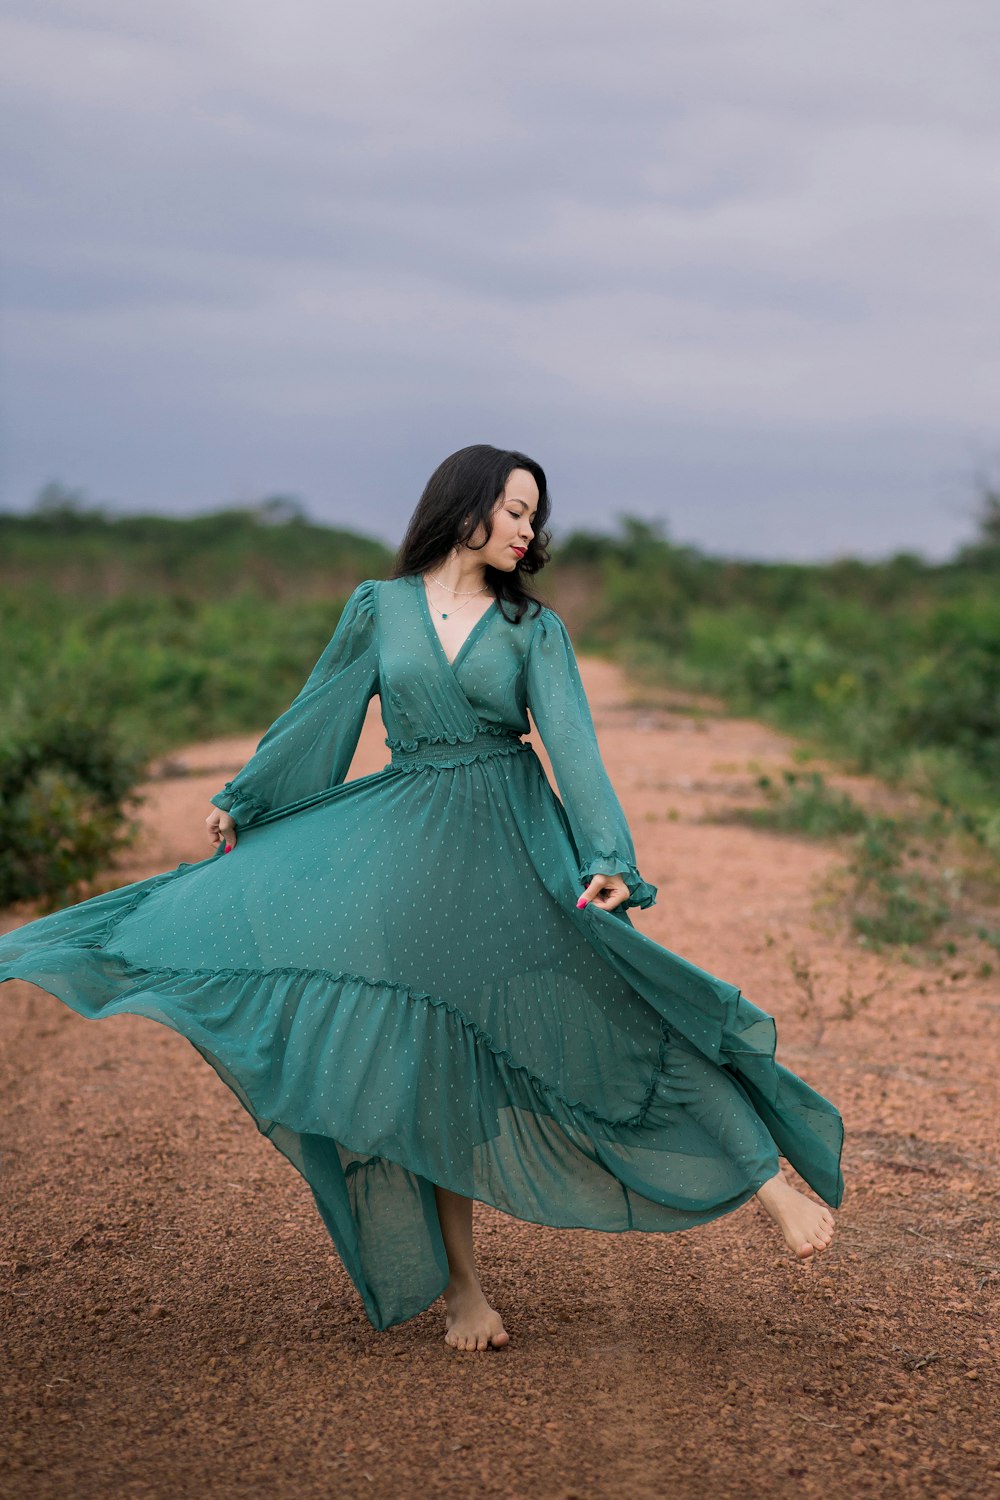 Frau im grünen langärmeligen Kleid tagsüber auf brauner Wiese